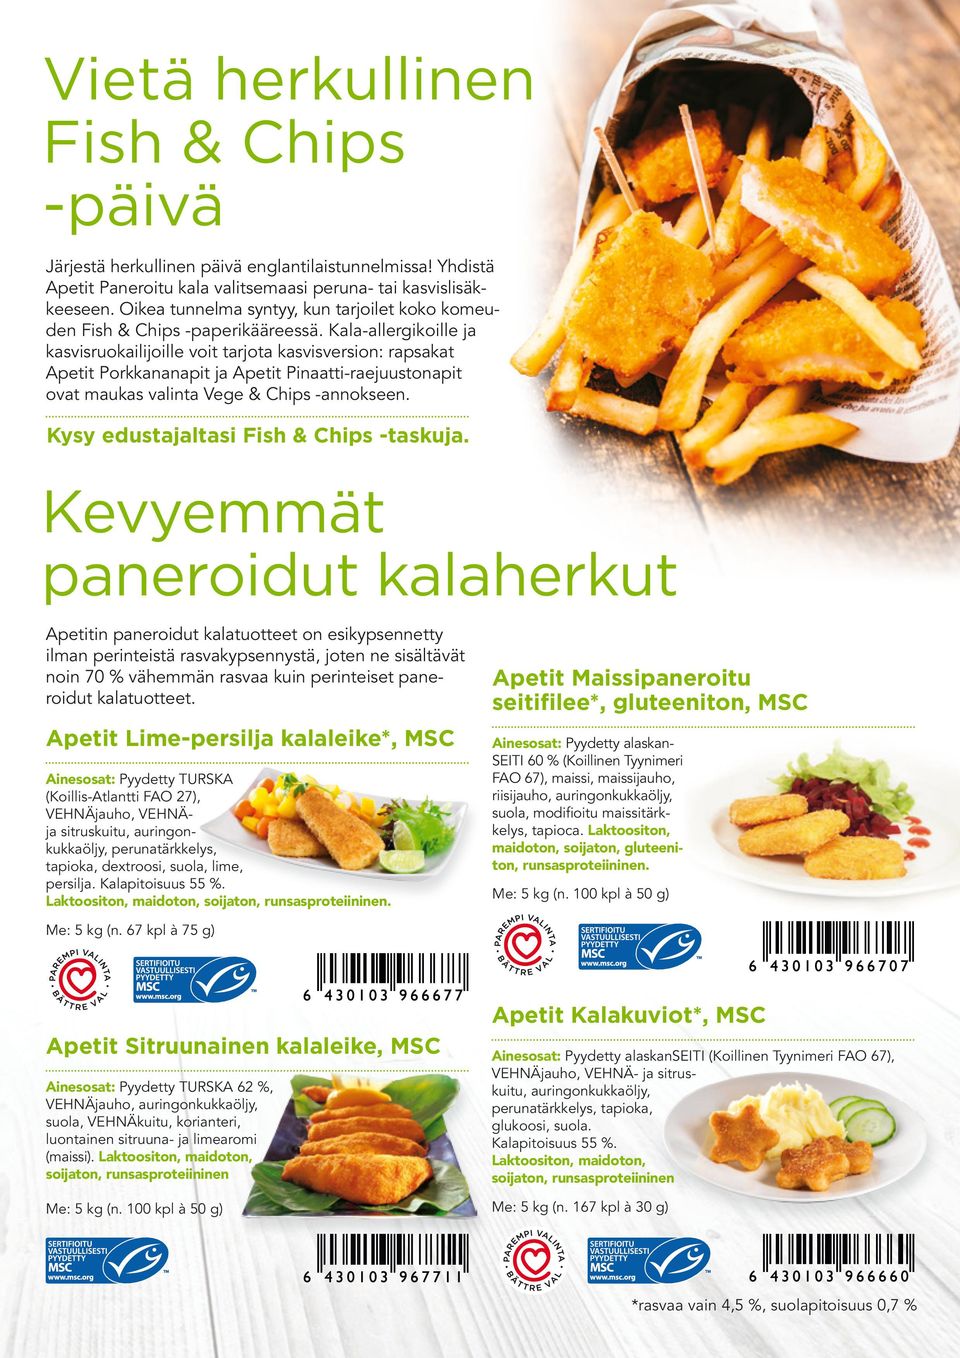 Kala-allergikoille ja kasvisruokailijoille voit tarjota kasvisversion: rapsakat Apetit Porkkananapit ja Apetit Pinaatti-raejuustonapit ovat maukas valinta Vege & Chips -annokseen.